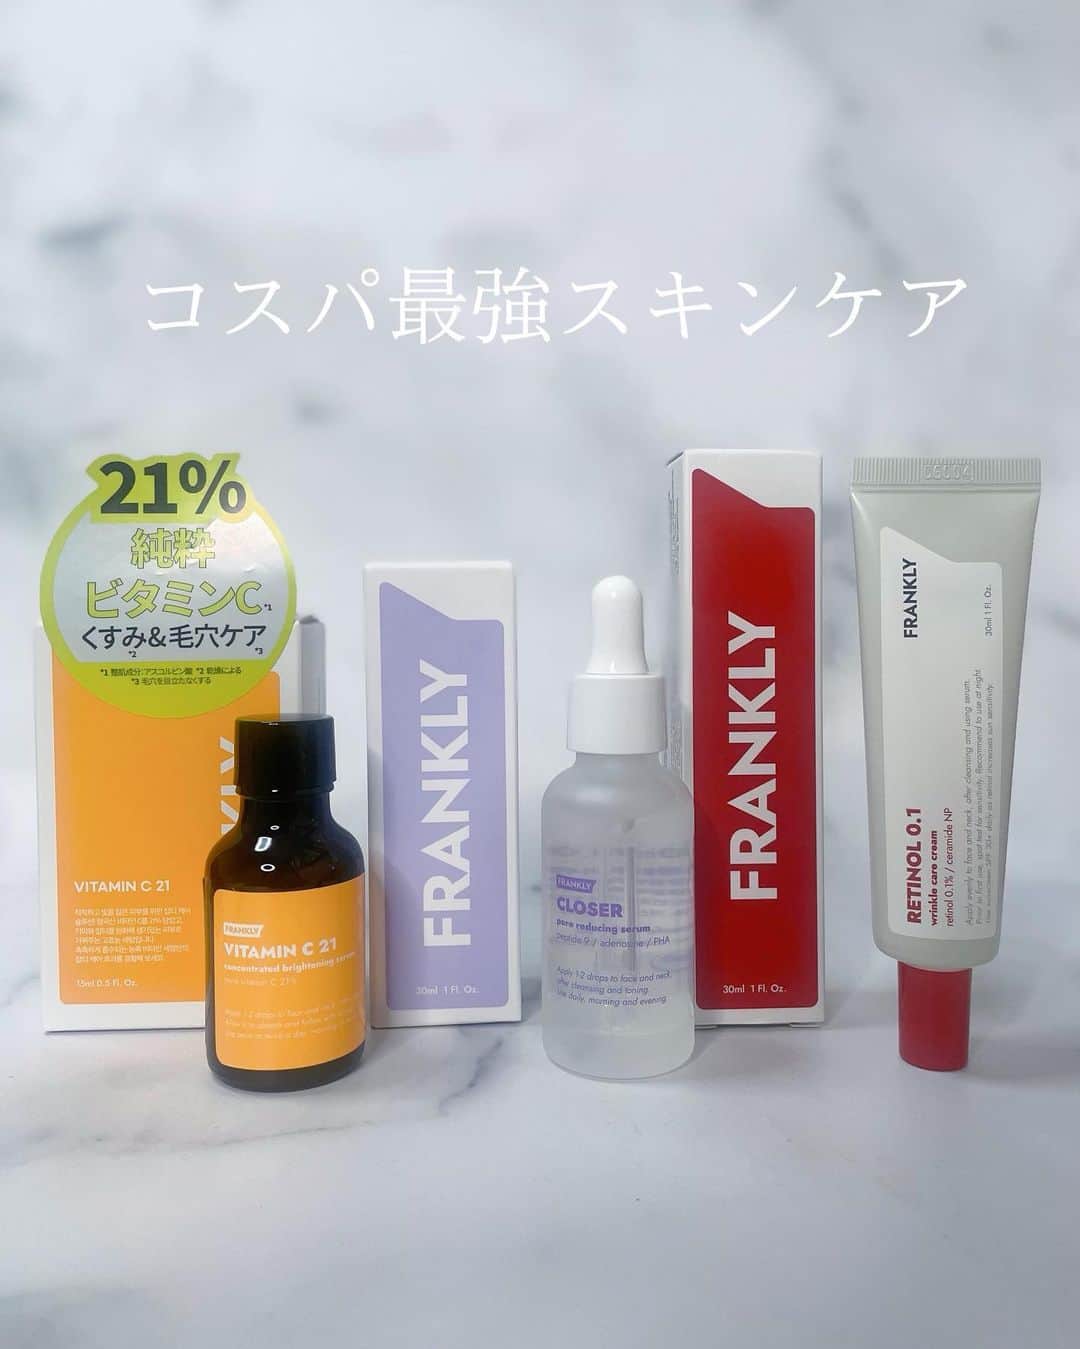 みかほのインスタグラム：「⁡ コスパ◎スキンケアブランド FRANKLY(フランクリー） @frankly.skincare_jp  @frankly.skincare  ⁡ ⁡ ⁡ FRANKYは化粧品会社の研究員たちが 直接つくったから 高品質で高コスパを実現した 韓国のスキンケアブランド✨️ 韓国でもオリーブヤングでも大人気！💗 今回は3アイテム紹介するね🥰 ⁡ ⁡ ⁡ #クローザーセラム  毛穴もちもちセラム🤍 乾燥による肌悩みや肌のきめをケア  毎日使っても負担のない引き締めセラム🤍 ⁡ #ビタC21セラム 肌が喜ぶビタミンCケア シミ・そばかす集中ケア 🤍 ⁡ #レチノール0.1クリーム レチノールとアデノシンの複合成分がたるんだ肌をピンとハリ・弾カサポート🤍 こっくりとした濃厚なクリーム🤍 ⁡ ⁡ ⁡ ⁡ とにかく、フランクリーやっすい😳😳🤍 ⁡ ⁡ 去年もレチノールとセラムを記事で紹介してるから見てみてね🫶🤍 #シンビジャパンみかほ ⁡ ⁡ #プロモーション @shinbeejapan ⁡ #kocostar #シンビジャパン #shinbeejapan   #centellian24 #東国製薬公認snsアンバサダー #abouttone #韓国コスメ #スキンケア紹介 #フランクリー #FRANKLY ⁡ 𓈒𓏸 ✿｡𓂃𓂃𓂃𓂃𓂃𓂃𓂃𓂃𓂃 ✿𓈒𓏸 ⁡ このアカウントは、美容の変態が 美容、コスメ紹介、ライフスタイルなど 毎日発信しています*°｡:.♡*₊ ྀི ⁡ @mikahogram  フォローで応援お願いします⸜♥⃜⸝ ⁡ 𓈒𓏸 ✿｡𓂃𓂃𓂃𓂃𓂃𓂃𓂃𓂃𓂃 ✿𓈒𓏸」